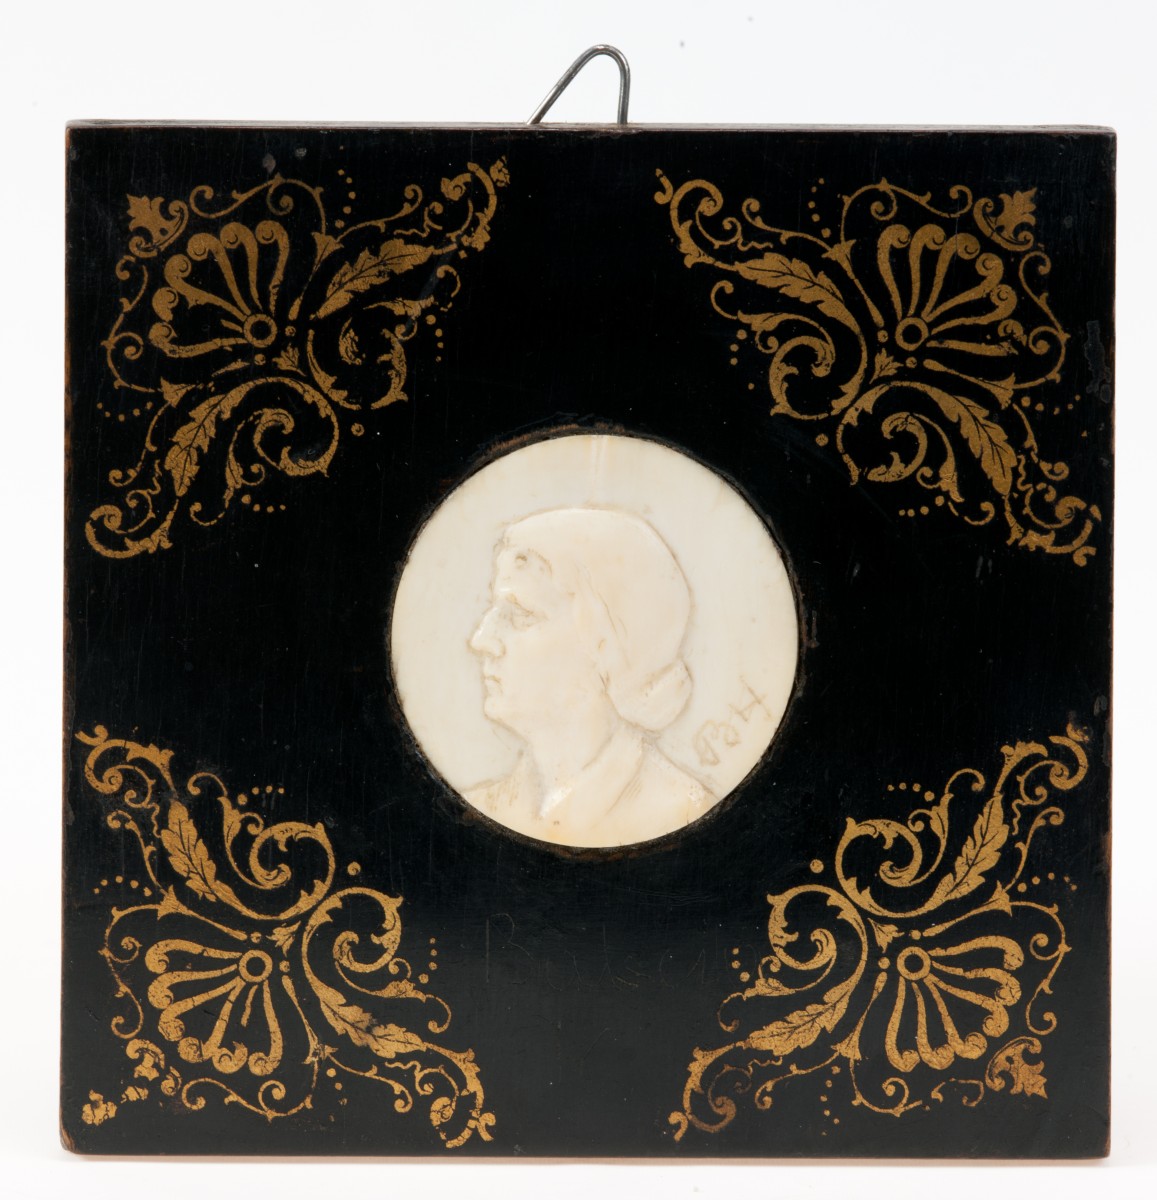 Medalion portretowy z kości słoniowej, oprawny w drewno. Na odwrocie dedykacja: "Państwu Marczewskim Buchner 1934".